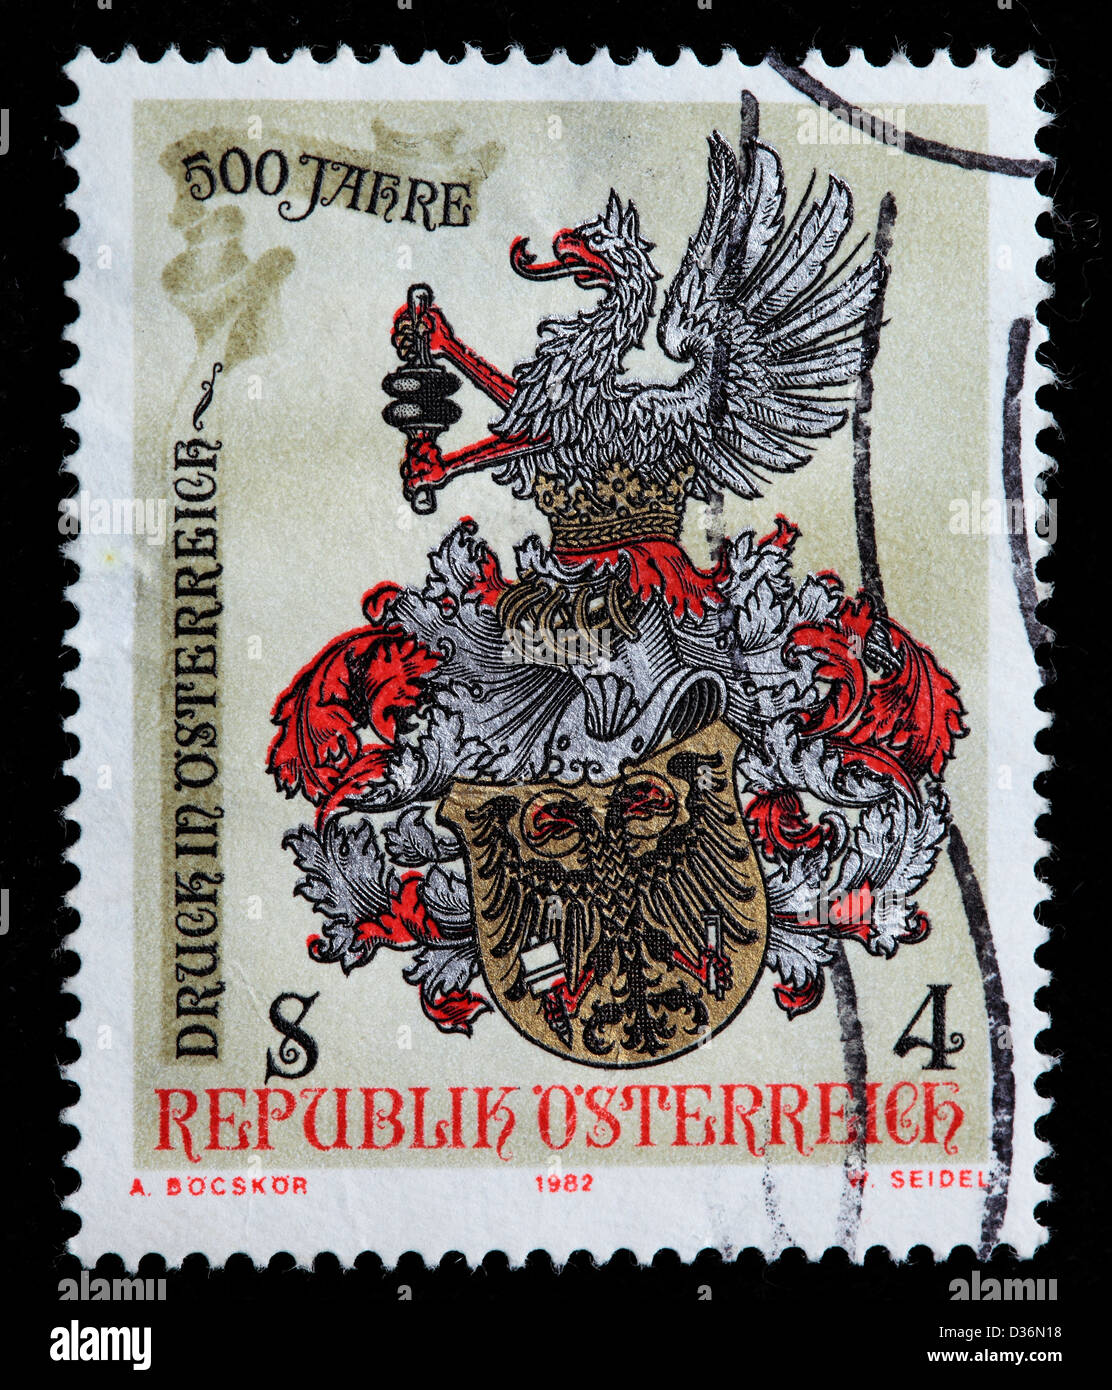 500. Geburtstag des Druckens in Österreich, Briefmarke, Österreich, 1985 Stockfoto